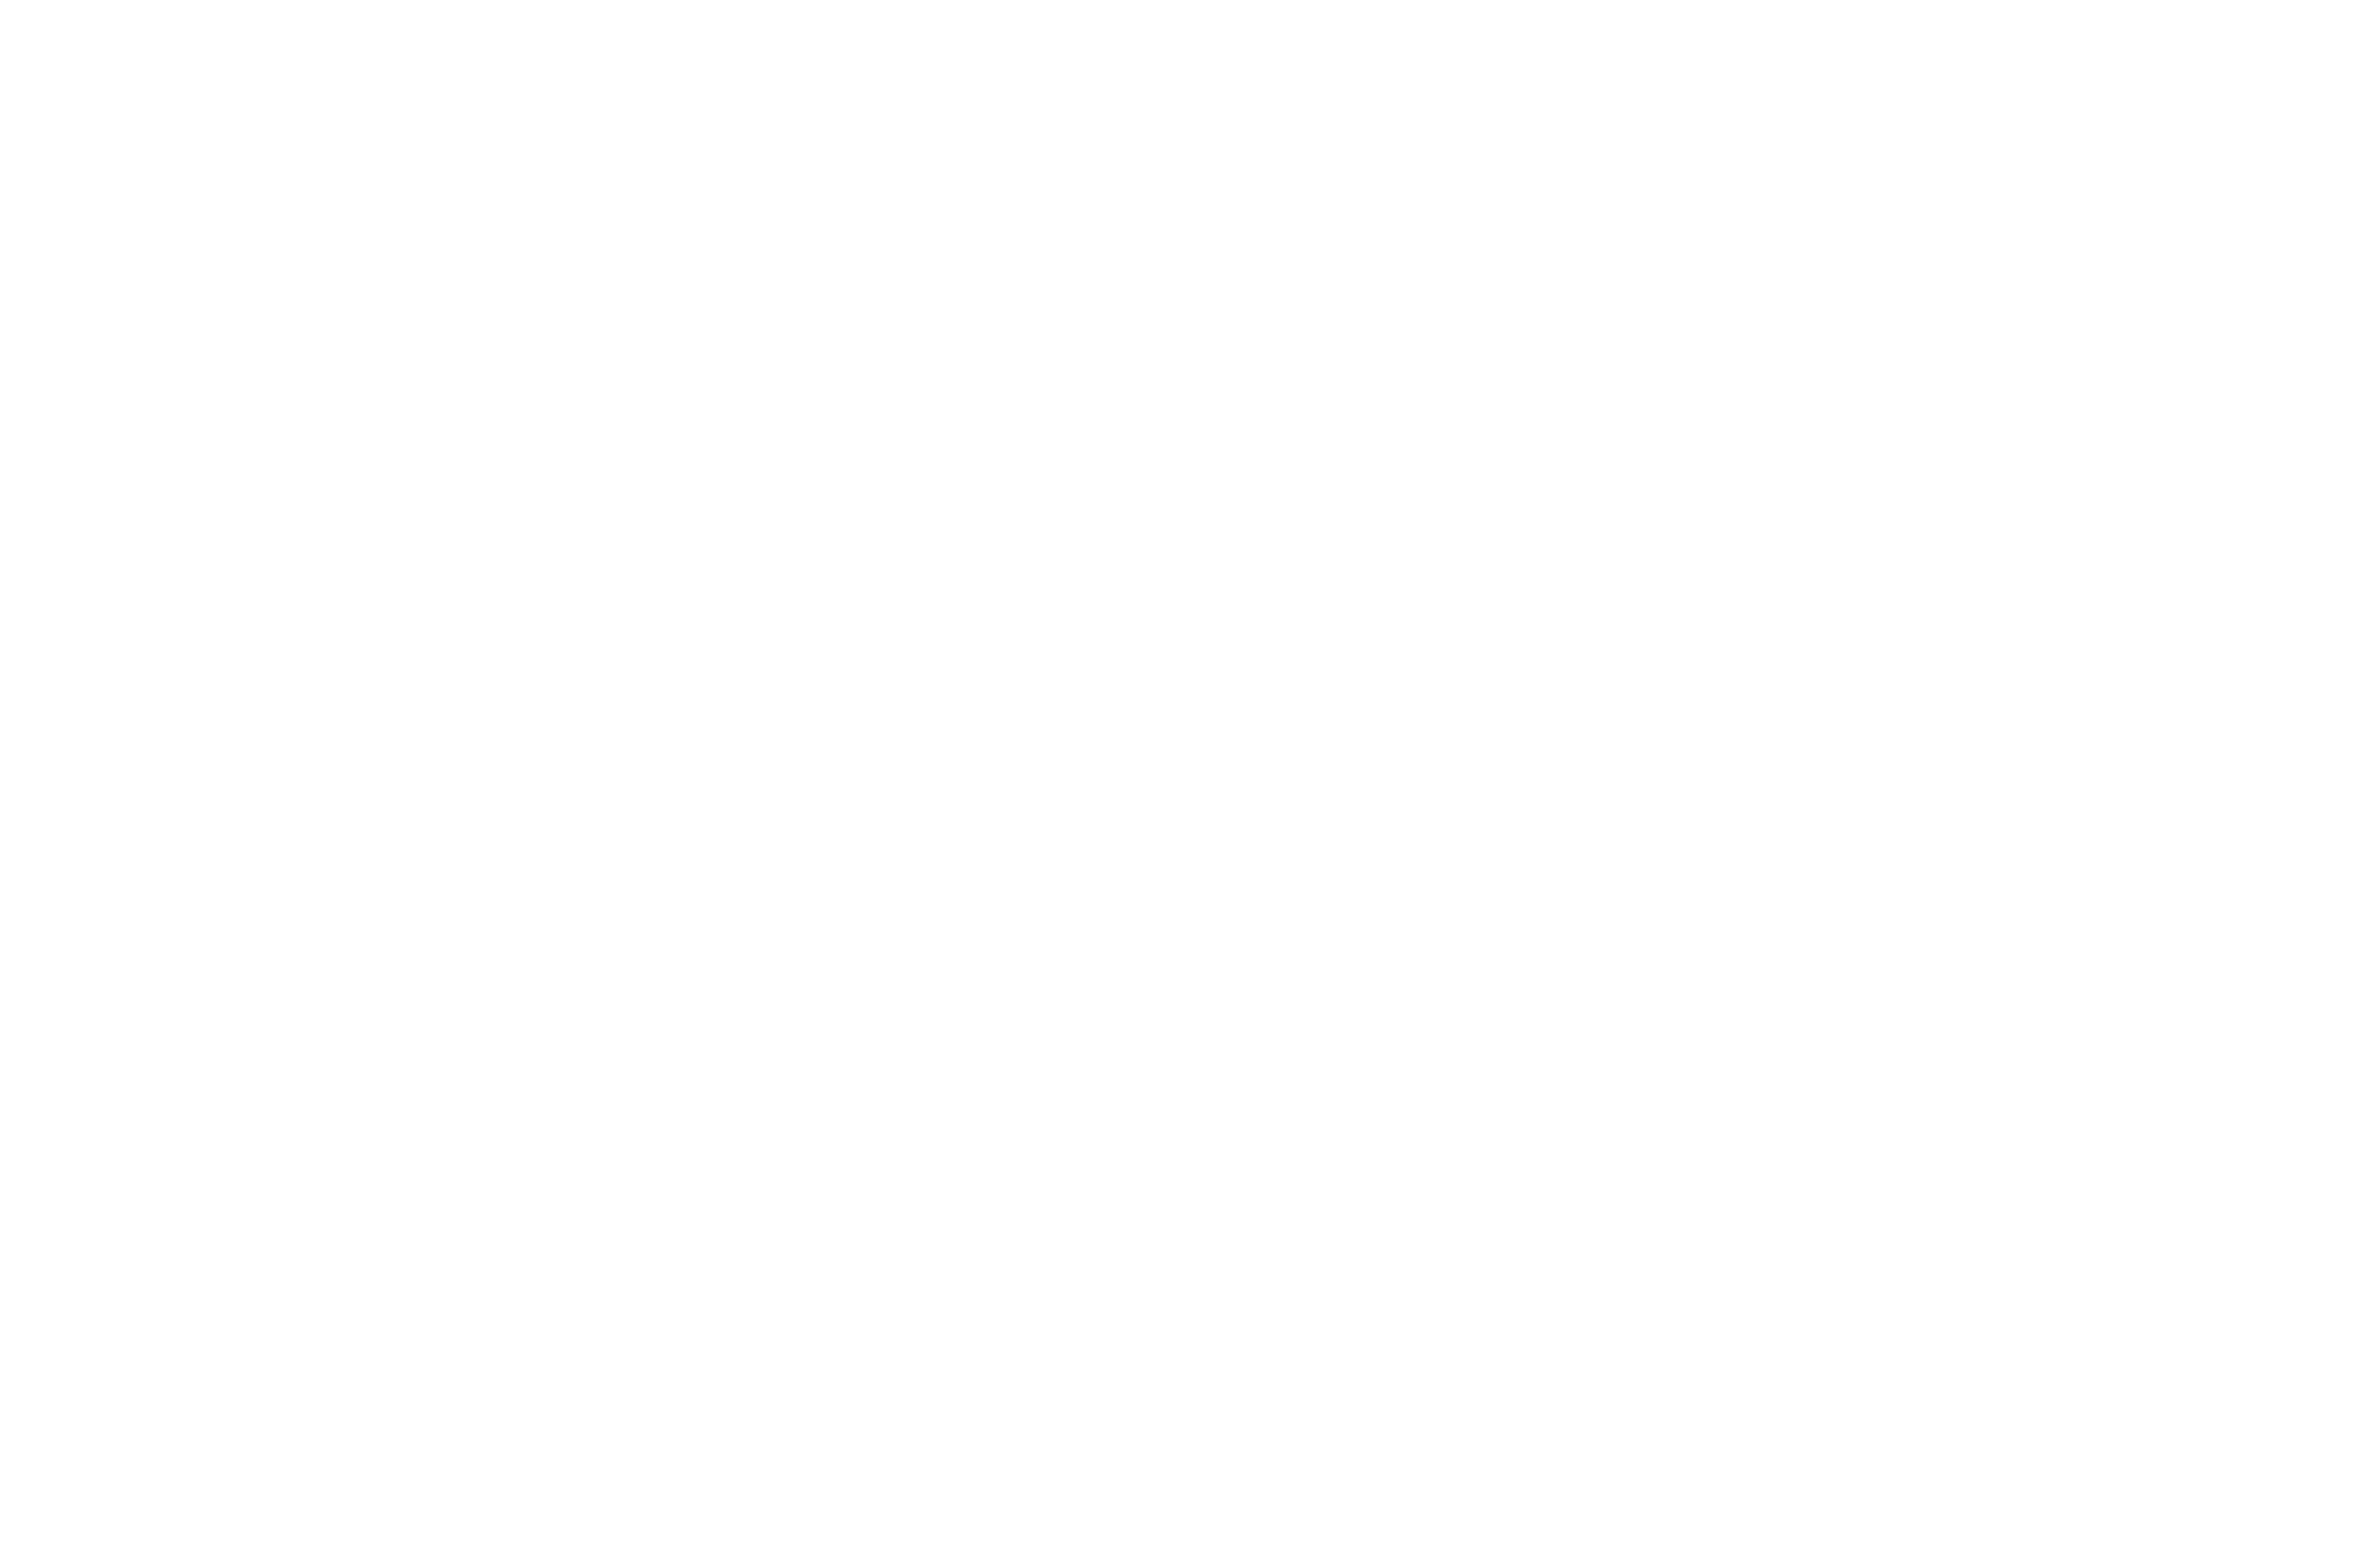 nelson myers foundation logo???????